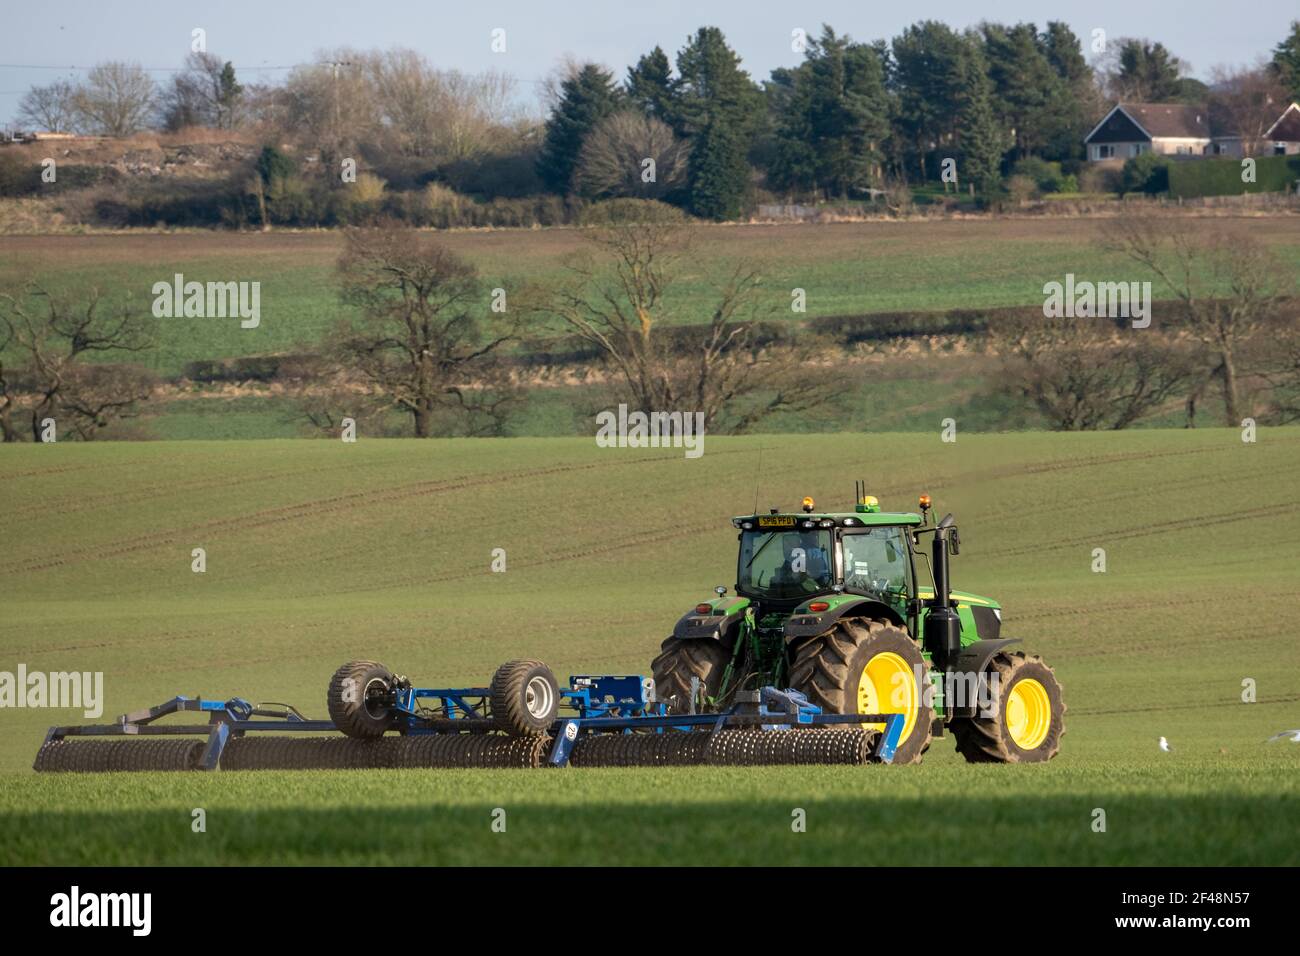 Un tracteur John Deere tire une machine de préparation de récolte sur un champ cultivé, West Lothian, Écosse. Banque D'Images